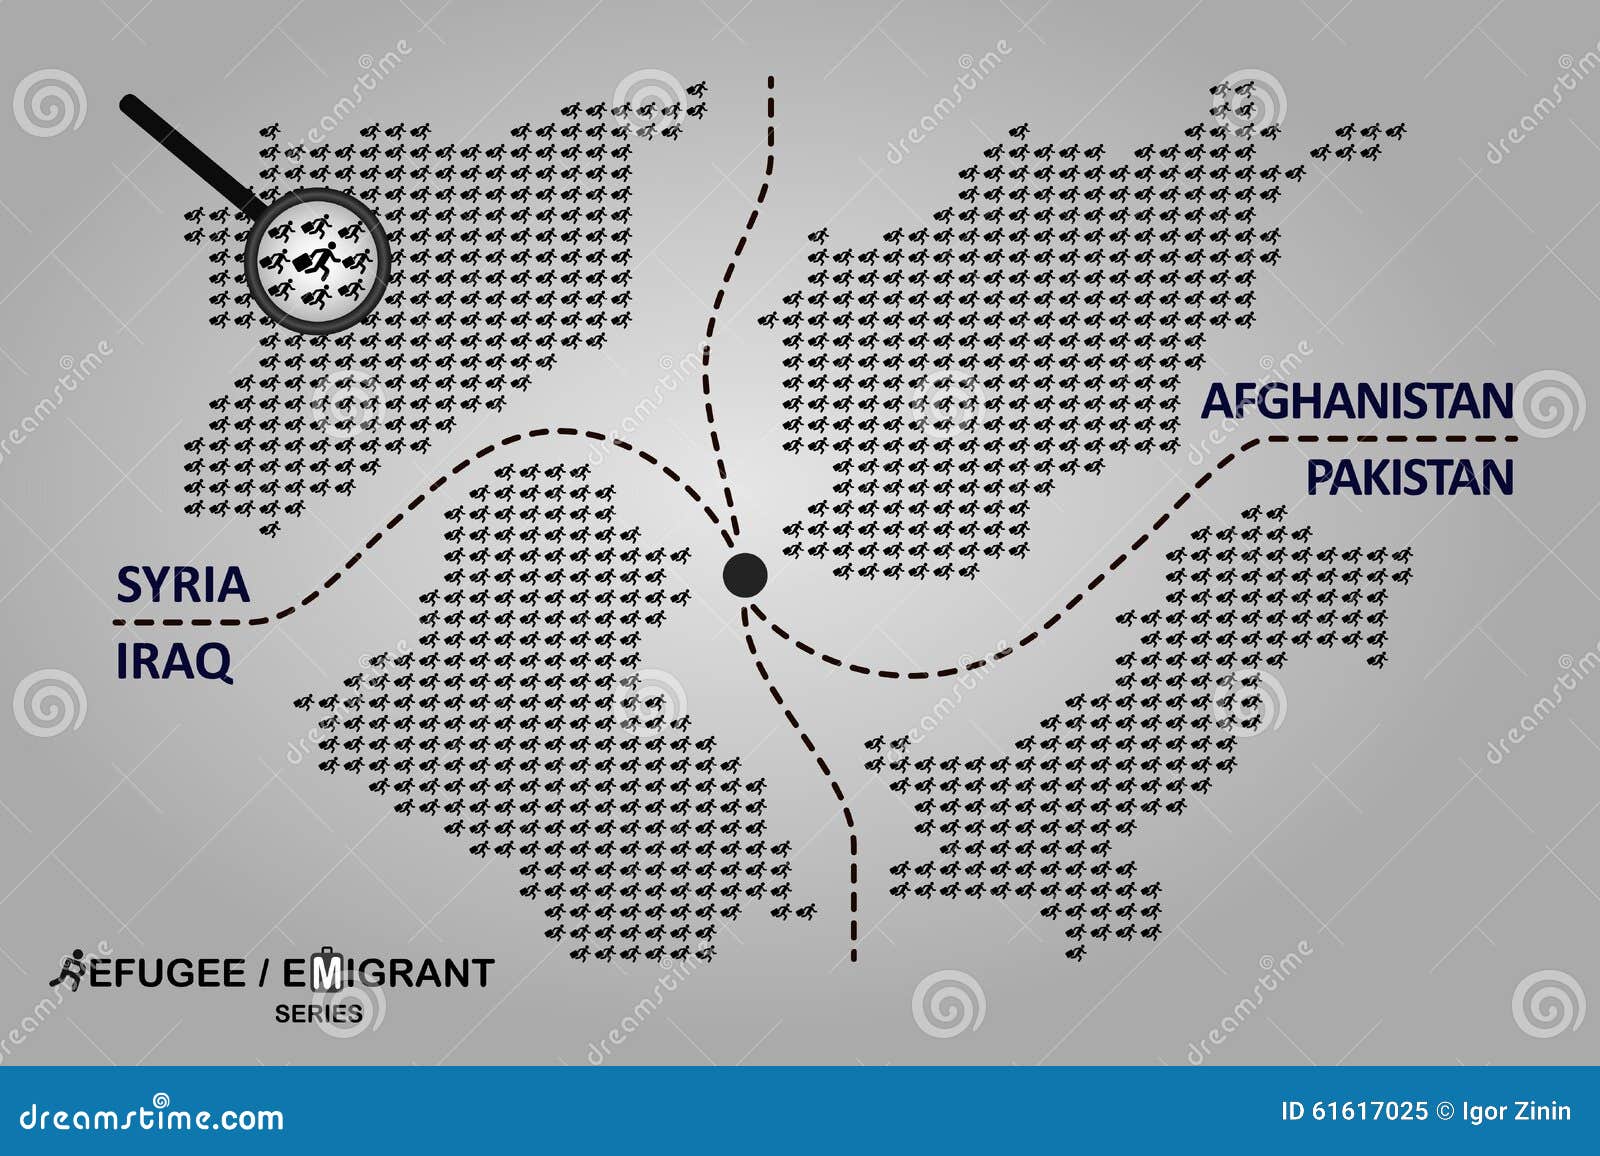 难民国家 例证包括阿富汗,叙利亚,伊拉克和巴基斯坦的地图图片